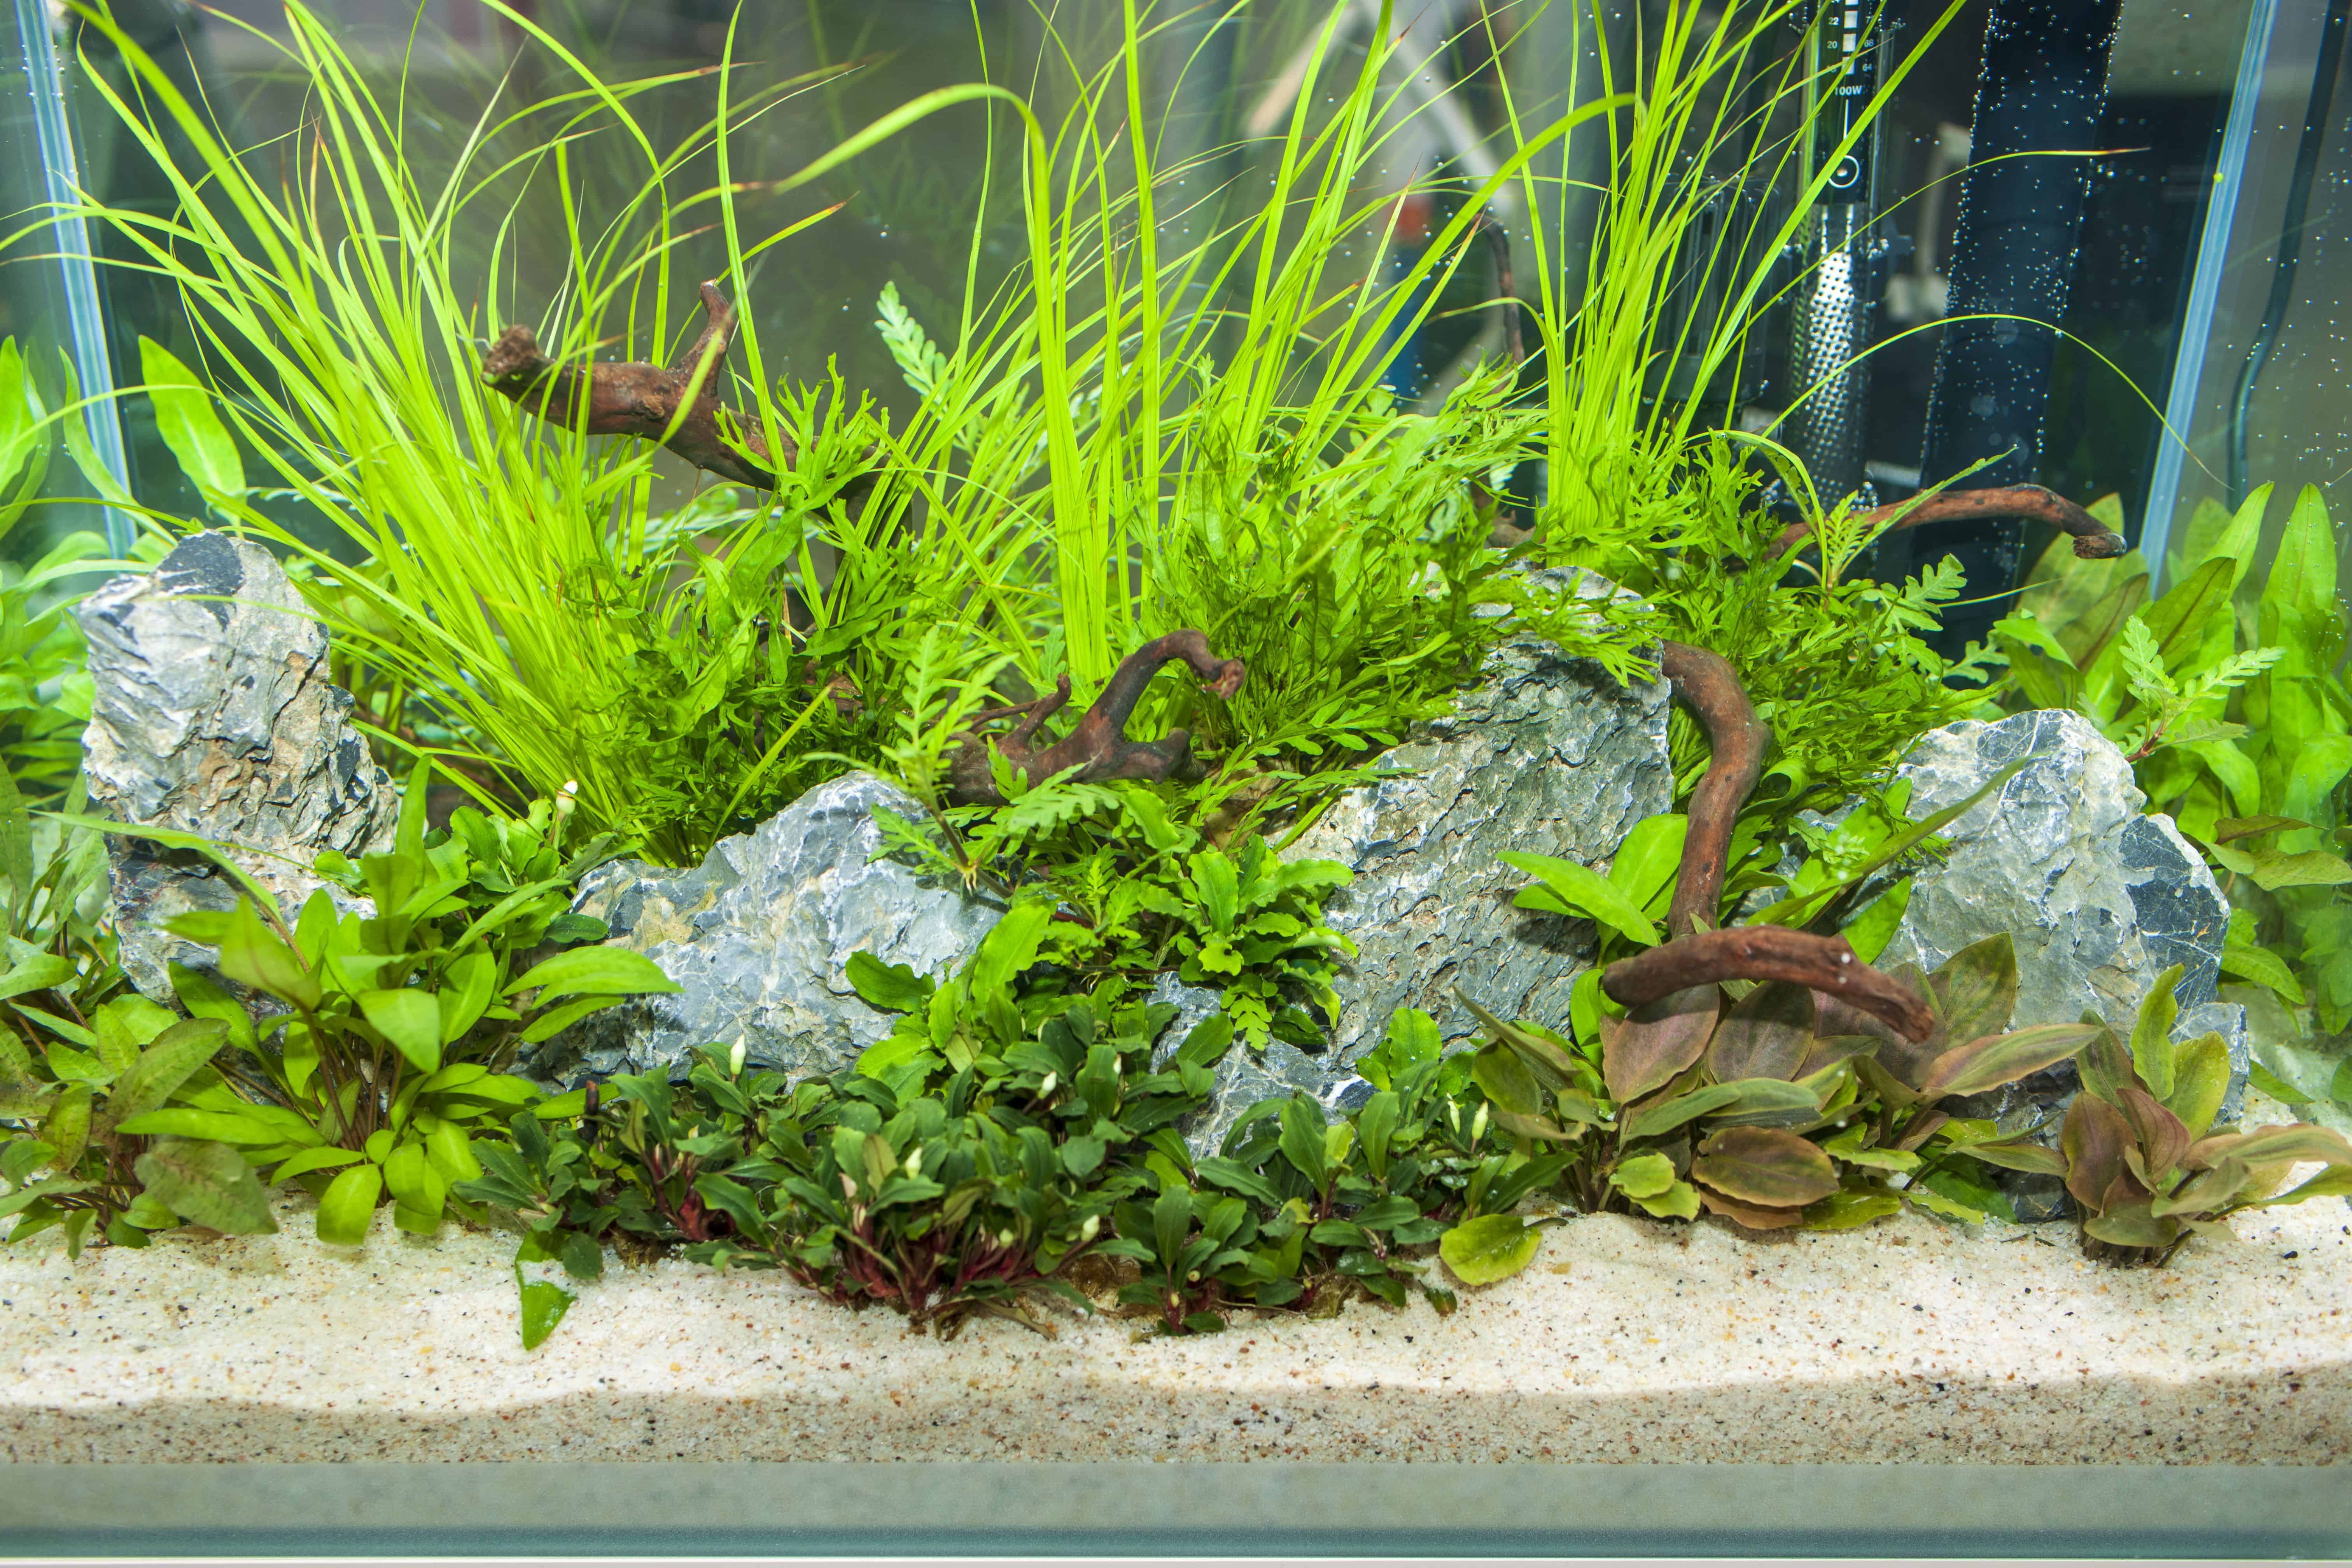 Pflanzenvielfalt im Unterwassergarten - Aquarien interessant gestalten 5